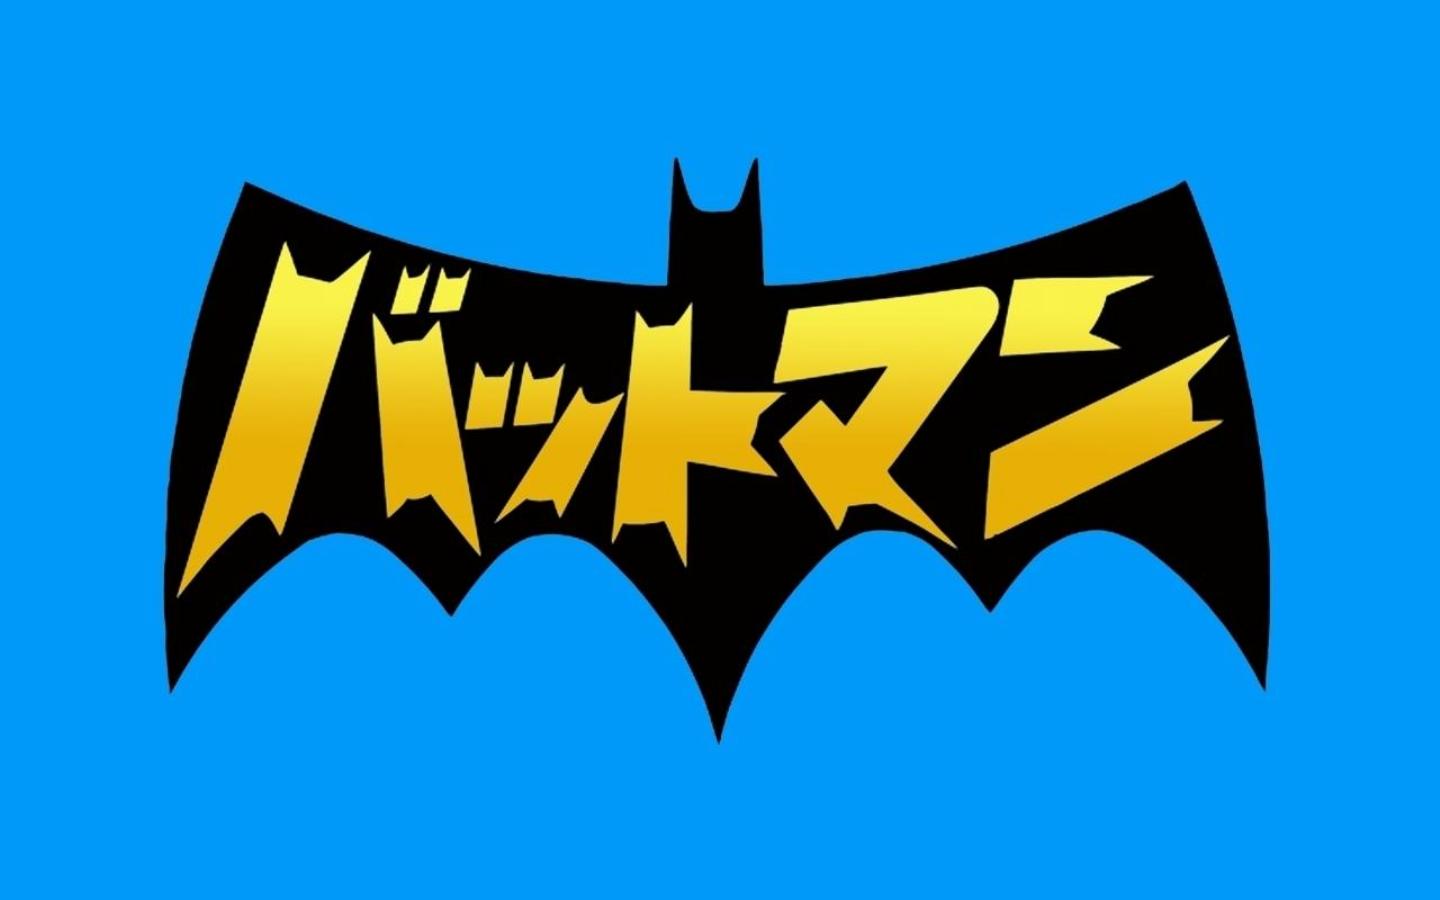 Скачать обои бесплатно Комиксы, Бэтмен, Логотип Бэтмена, Символ Бэтмена картинка на рабочий стол ПК